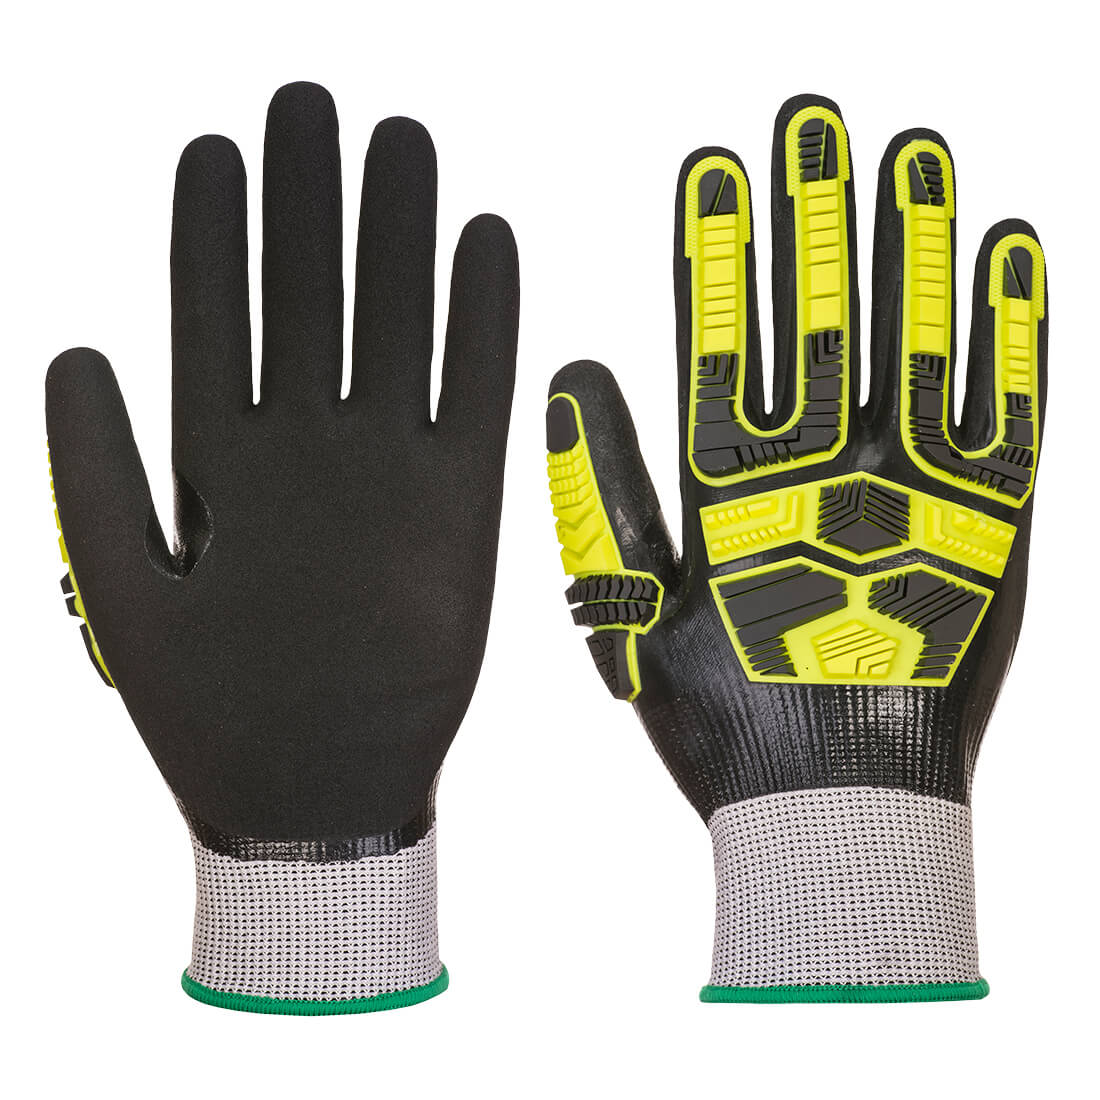 Waterproof HR Cut Impact Glove - Grey/Black